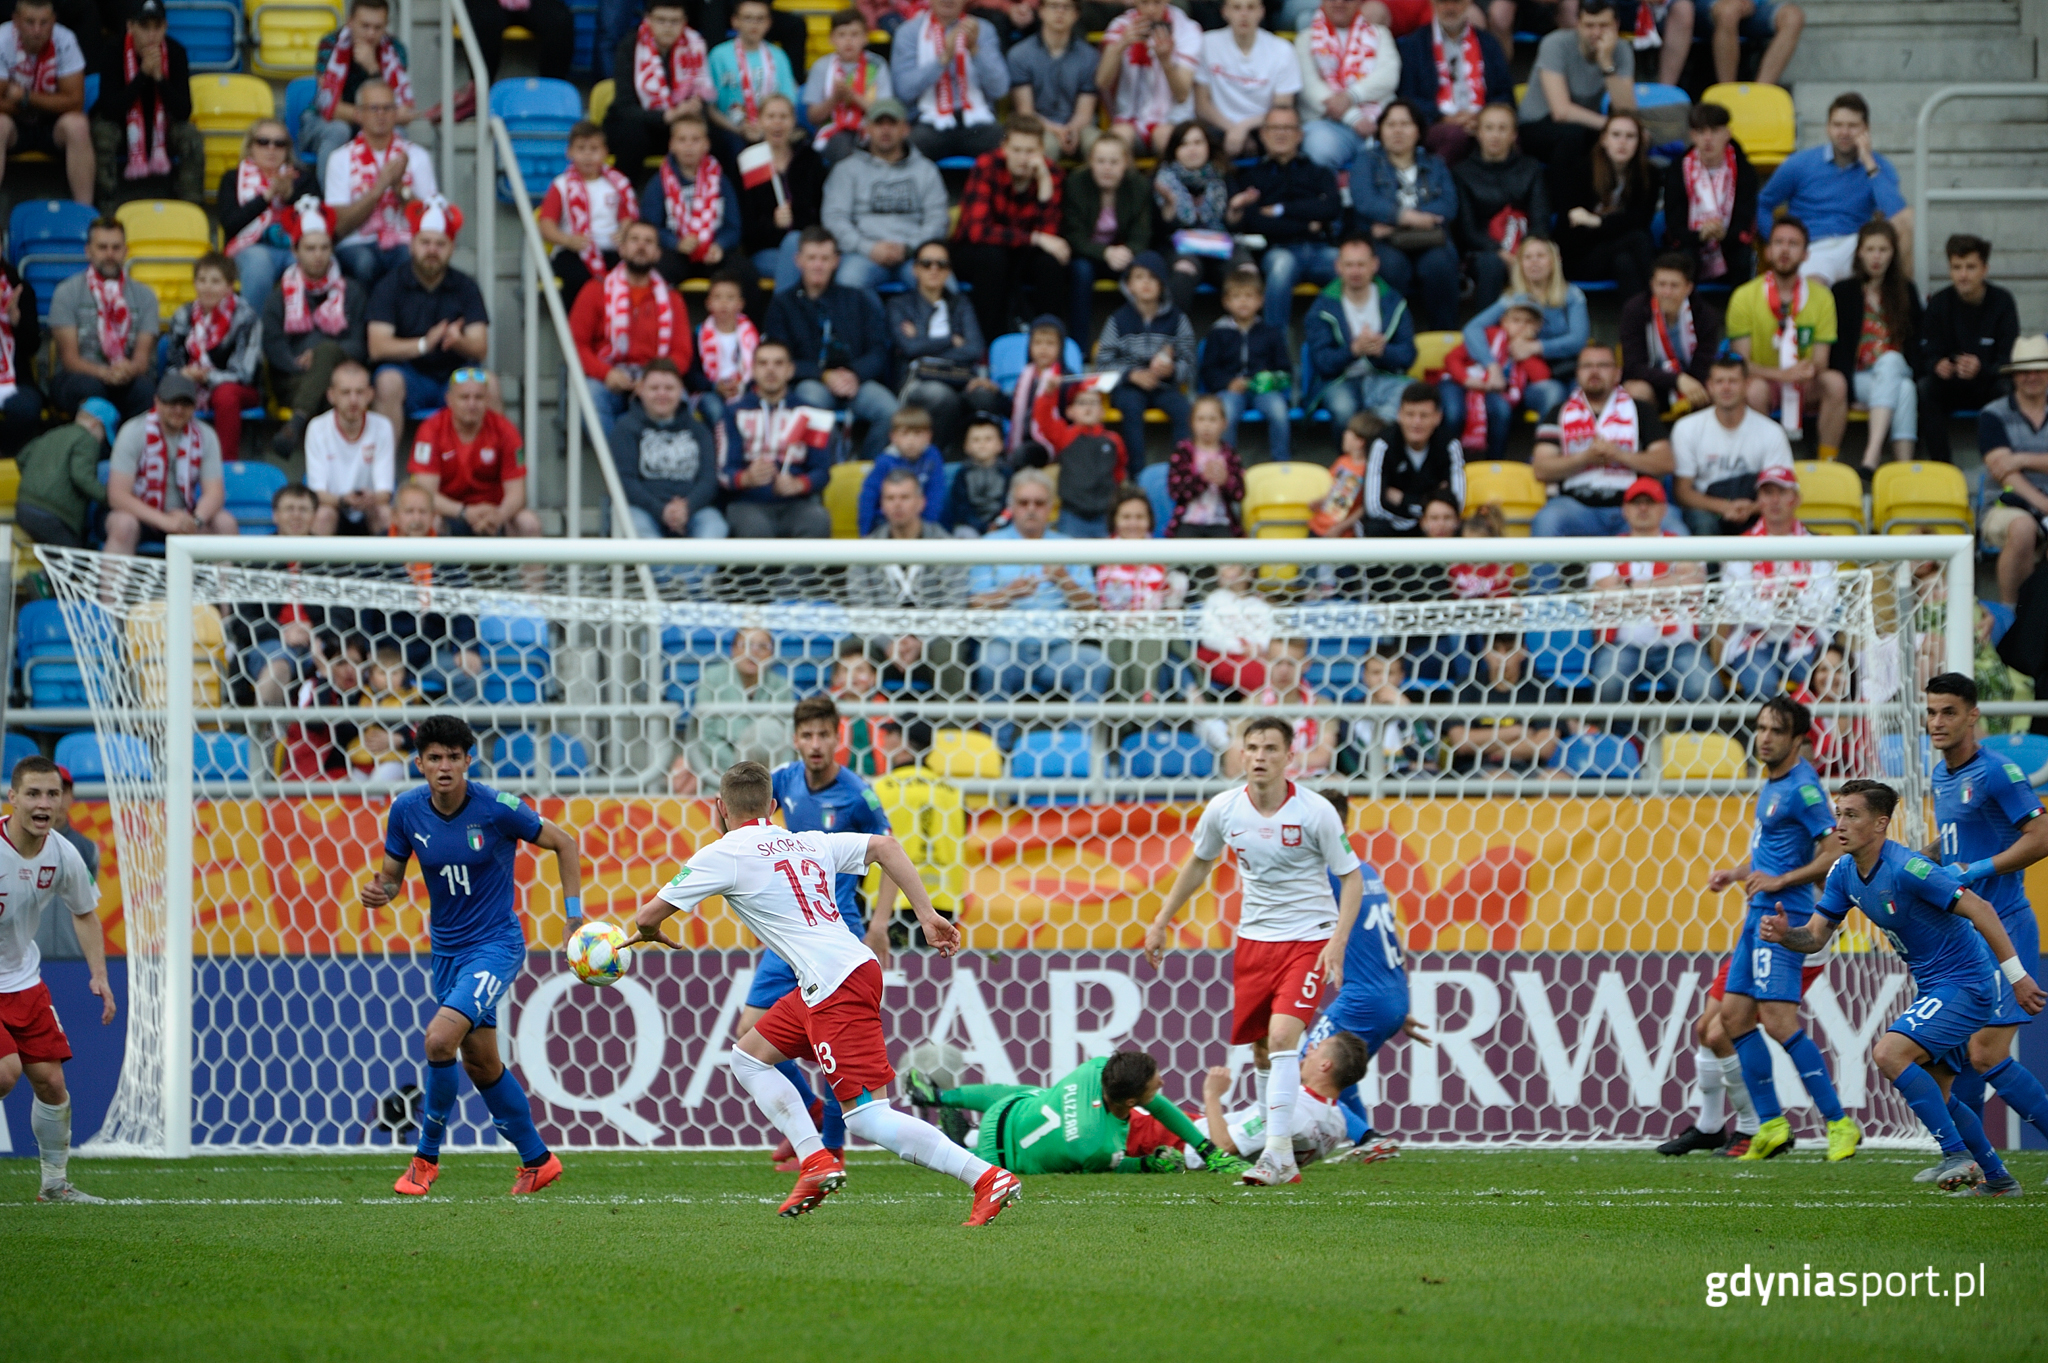 Mecz Polska - Włochy na Stadionie Miejskim w Gdyni w 2019 roku